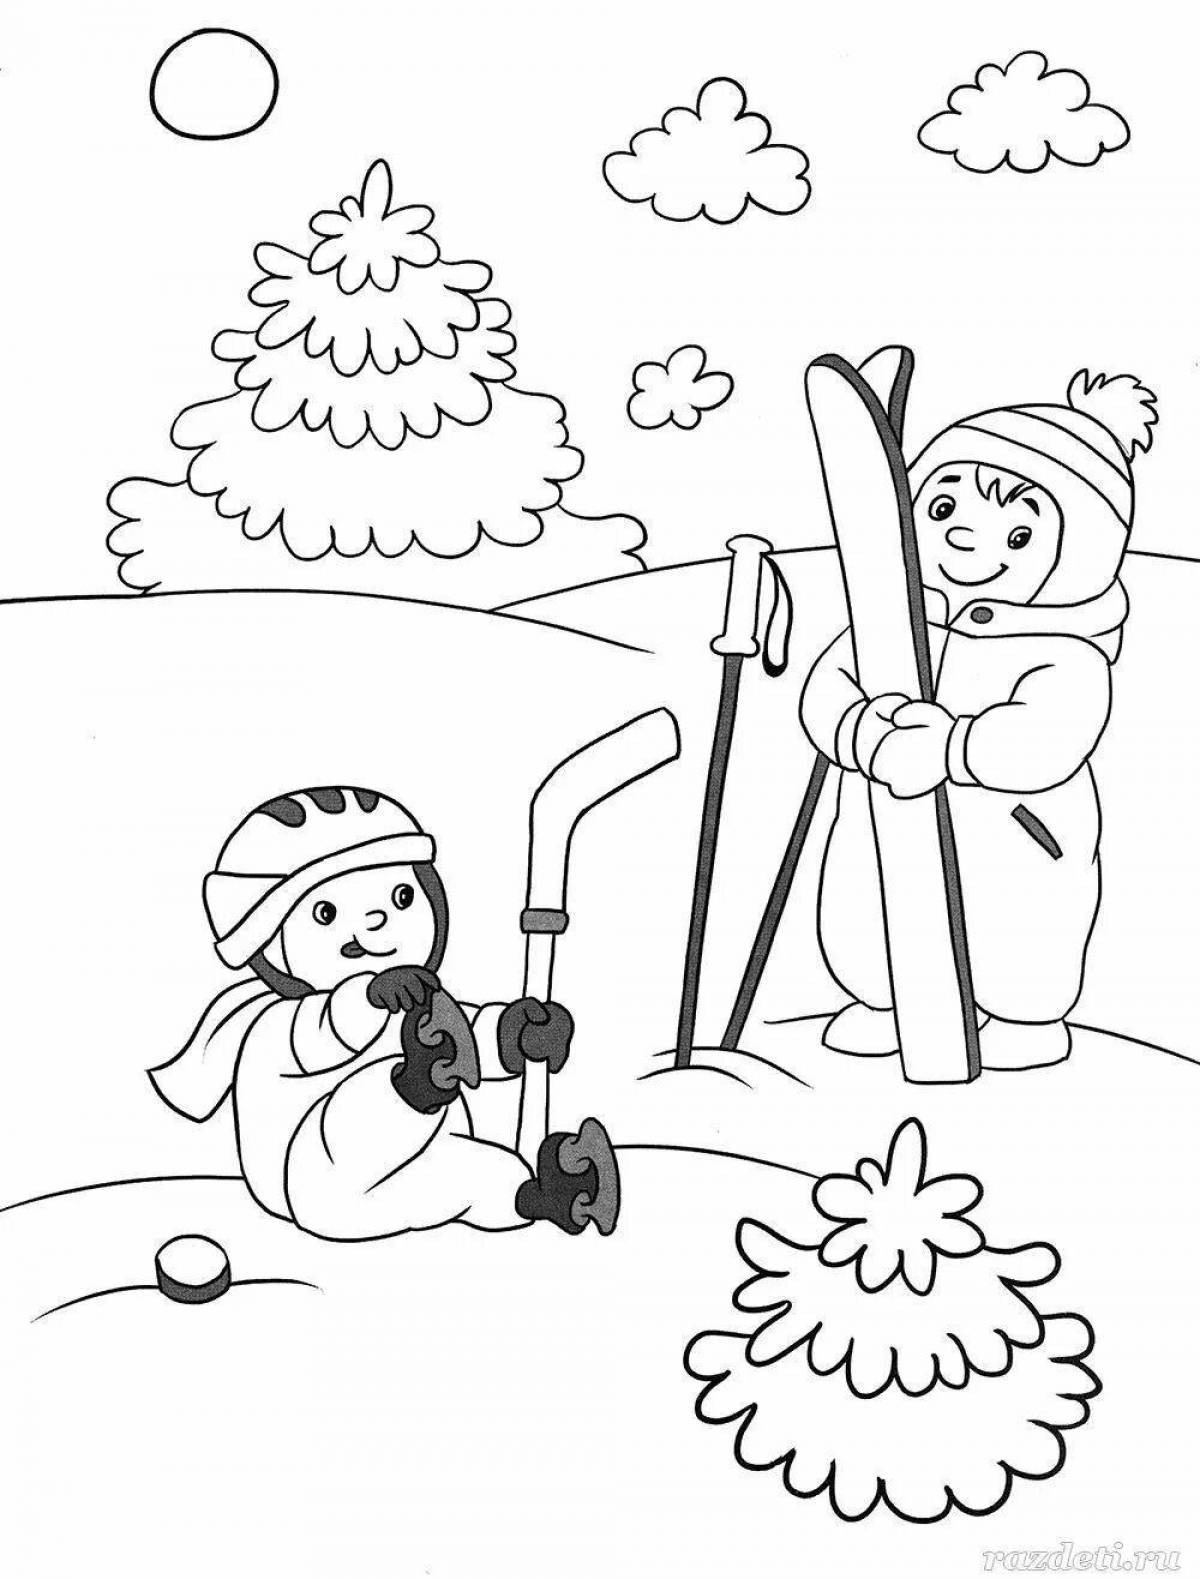 Яркая раскраска зима для детей 4 лет